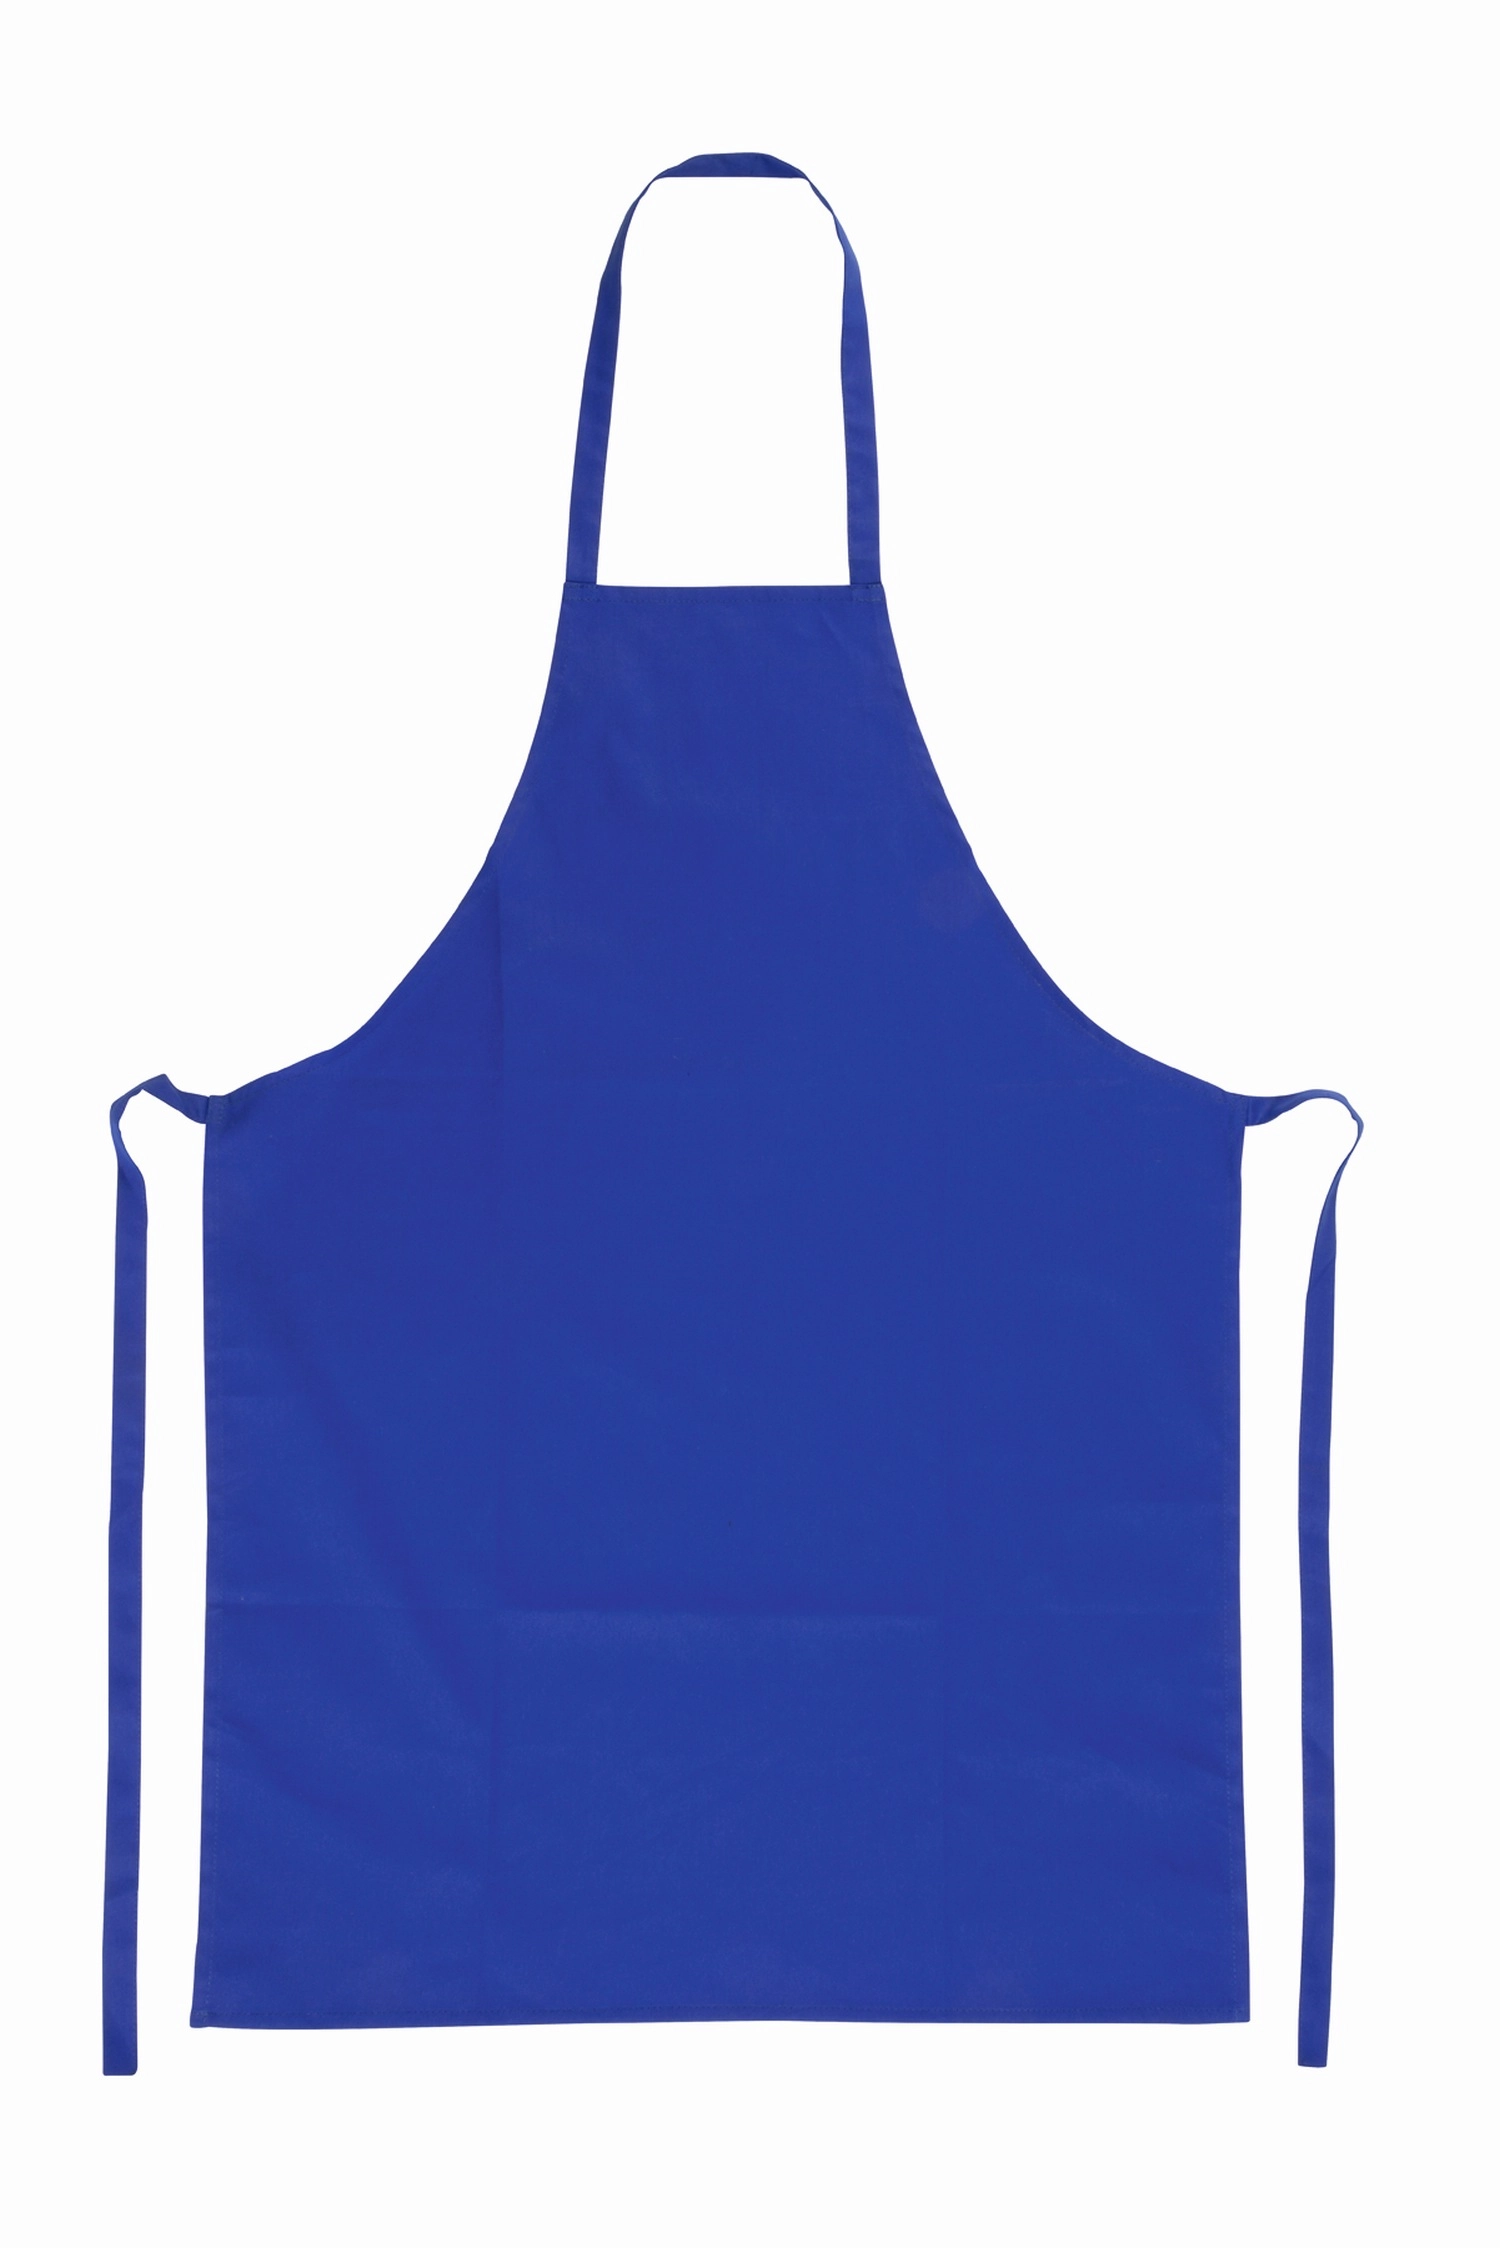 Fartuch kuchenny CHIEF WAITER, niebieski 56-1080142 niebieski